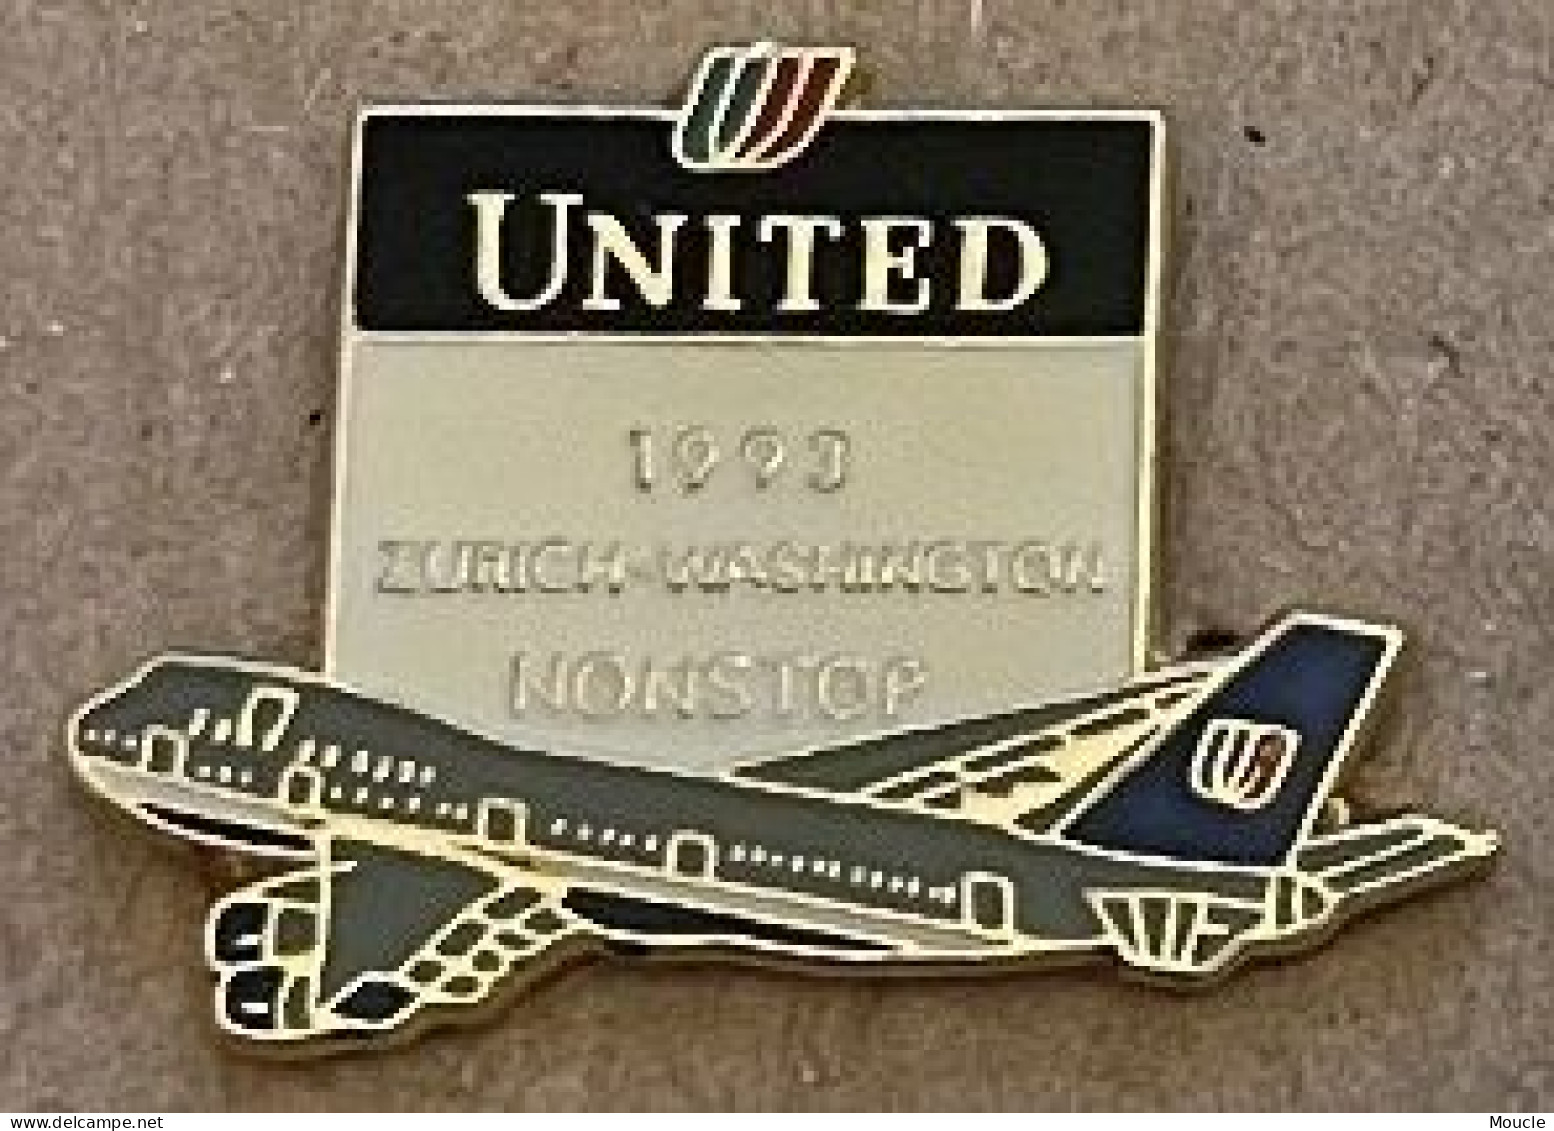 COMPAGNIE AERIENNE UNITED - 1993 ZÜRICH - WASHINGTON NON STOP - PLANE - SUISSE - USA - ETATS UNIS D'AMERIQUE -  (32) - Vliegtuigen